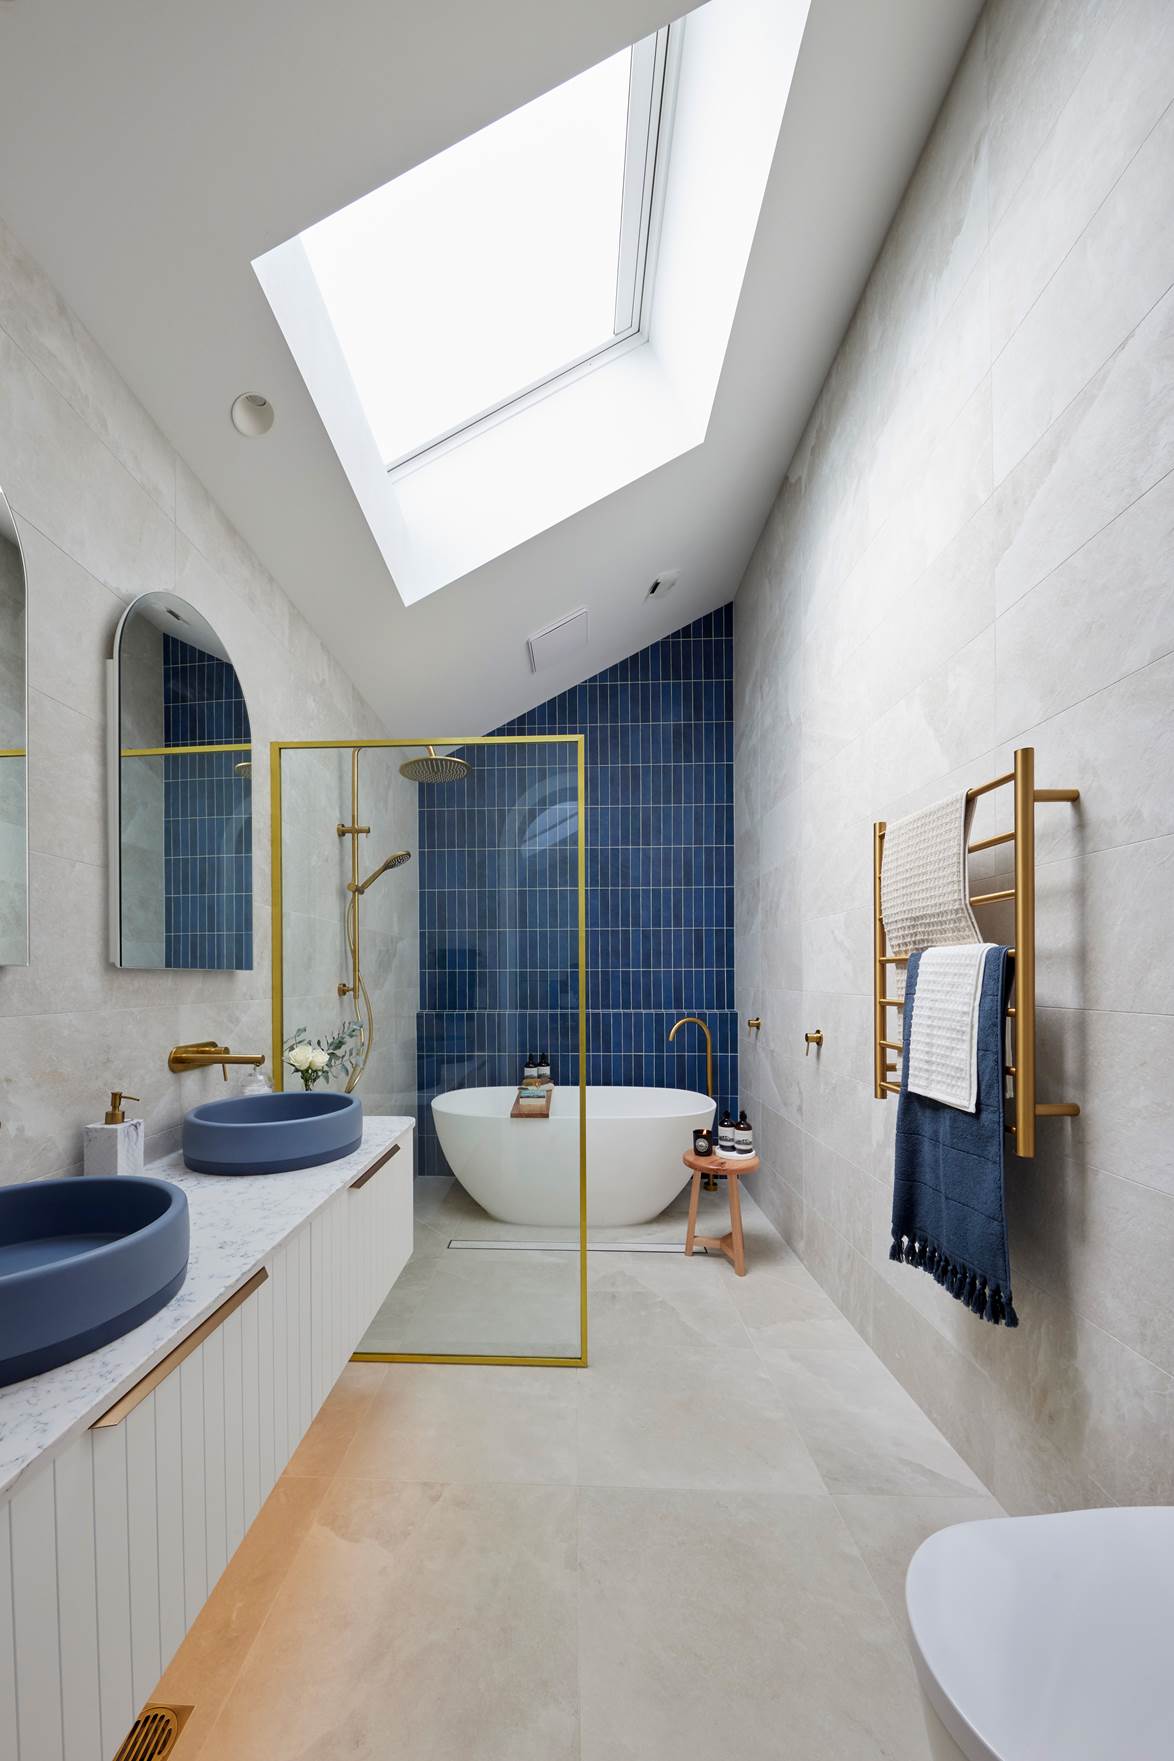 Tha hồ gom nhặt ý tưởng cho căn phòng tắm gia đình với những thiết kế đẹp miễn chê - Ảnh 3.